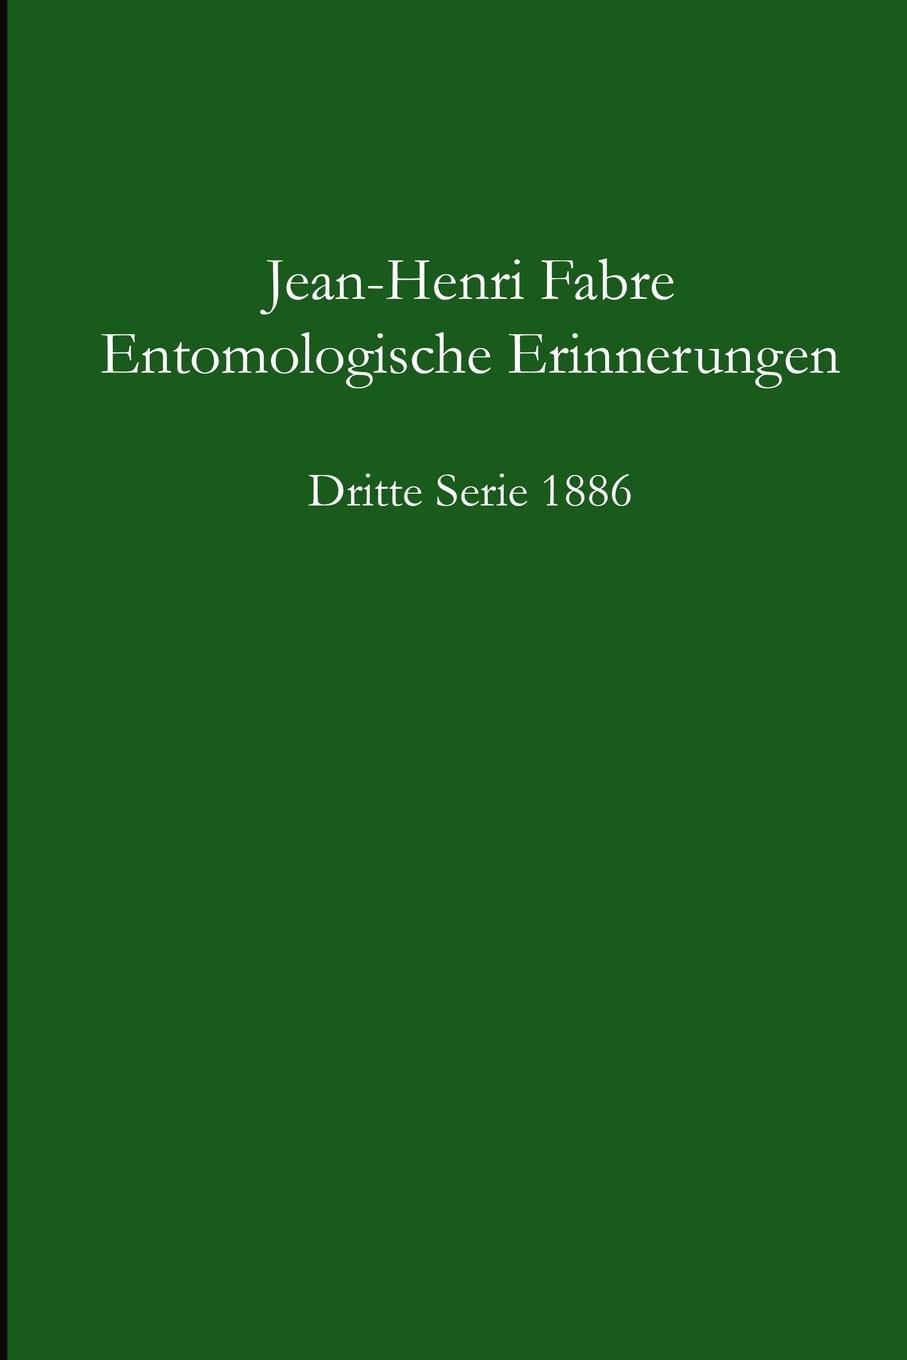 Entomologische Erinnerungen - 3.Serie 1886 / Jean-Henri Fabre / Taschenbuch / Paperback / Deutsch / 2014 / Lulu.com / EAN 9781291728736 - Fabre, Jean-Henri